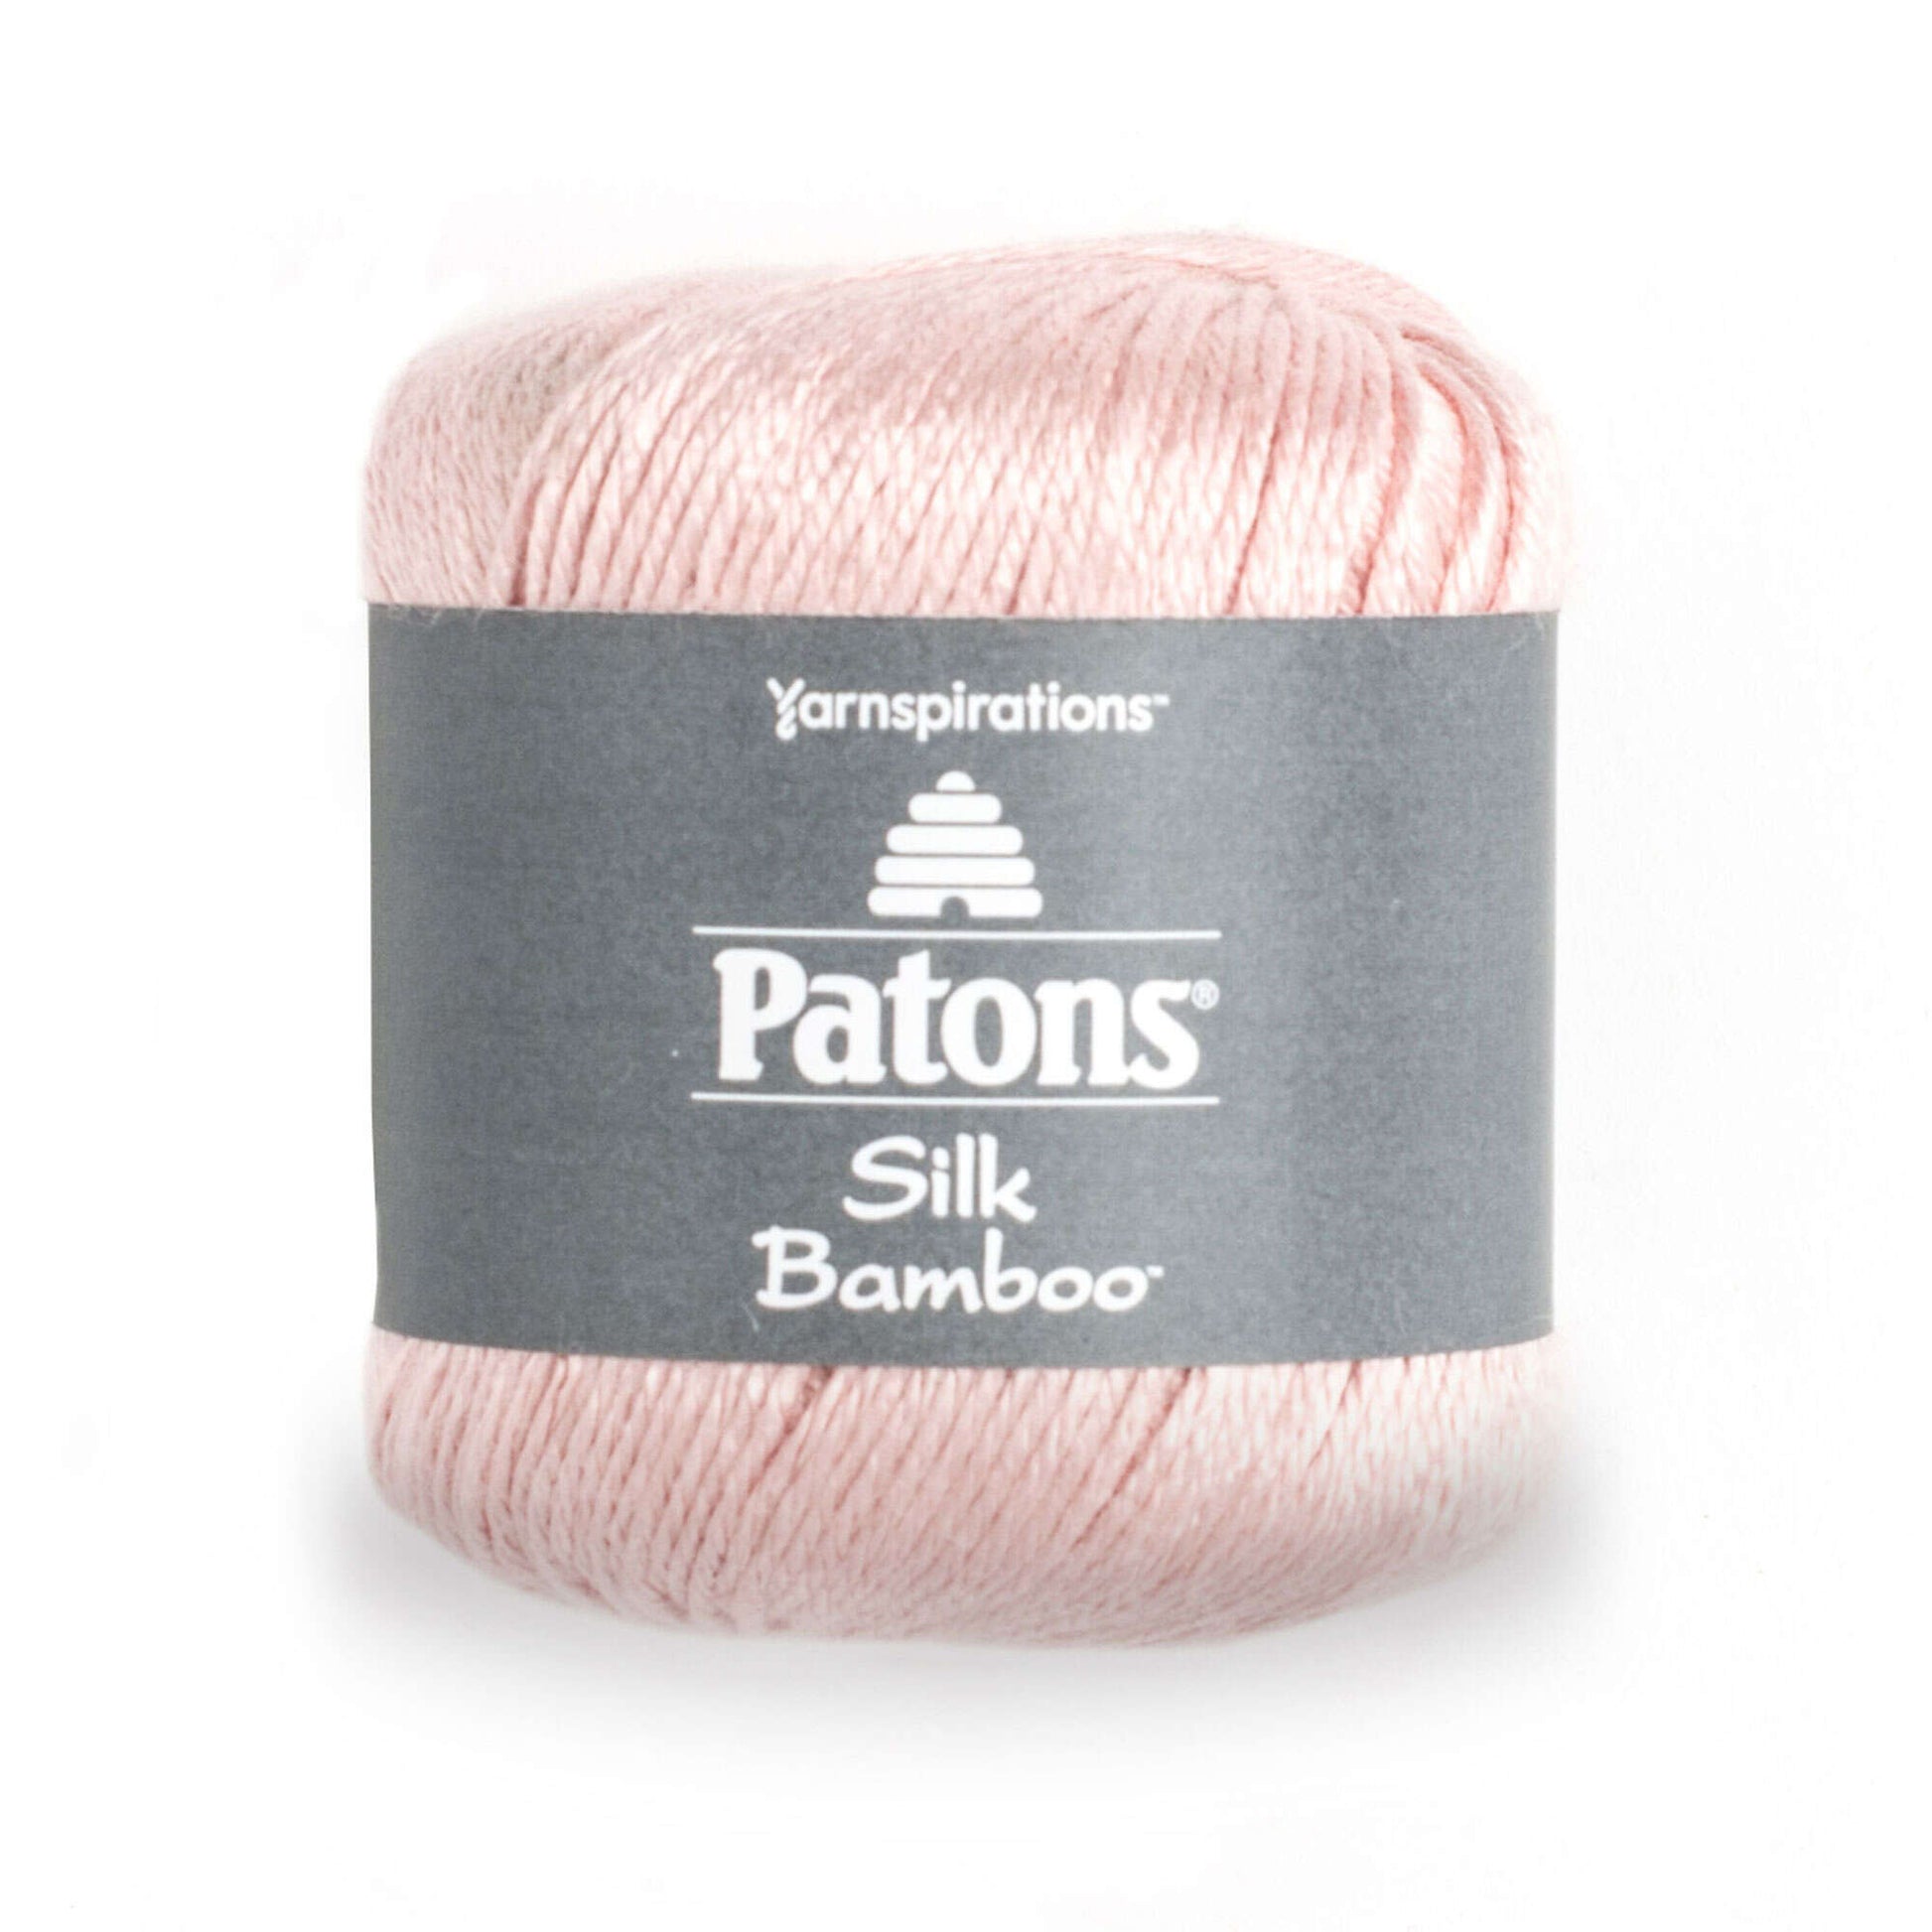 Patons Silk Bamboo Yarn - Discontinued Shades